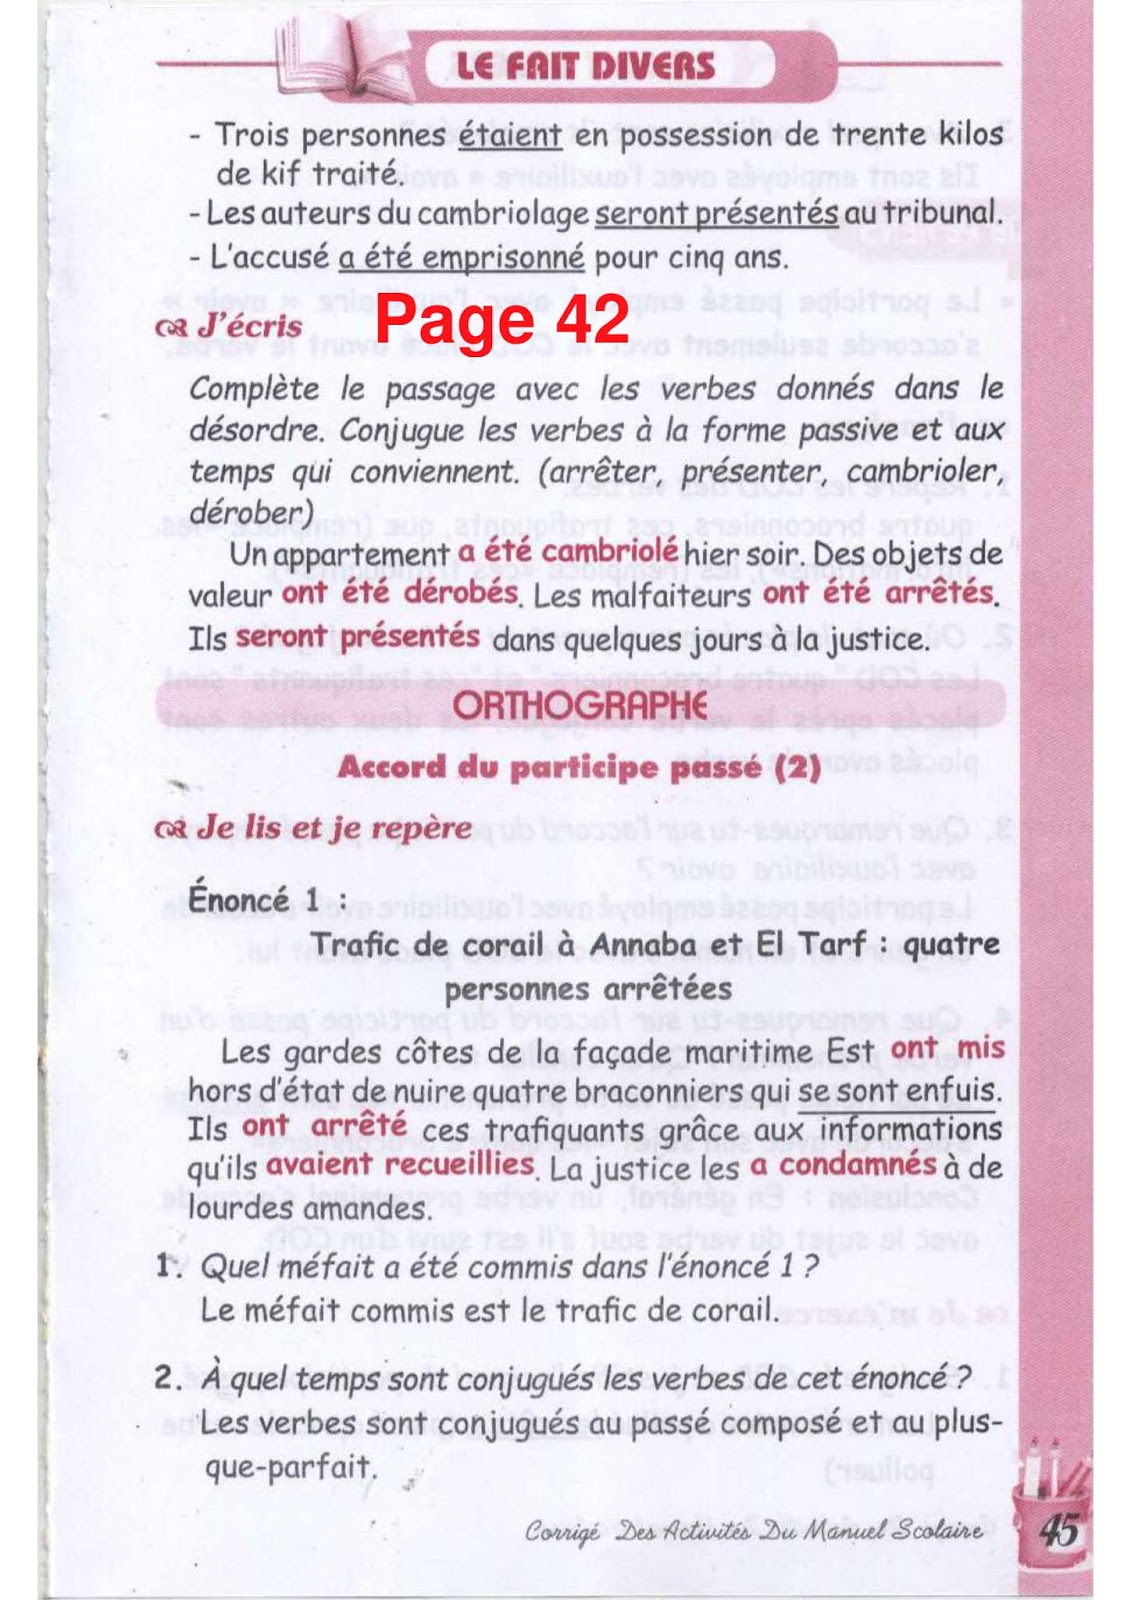 حل تمارين صفحة 42 الفرنسية للسنة الثالثة متوسط - الجيل الثاني